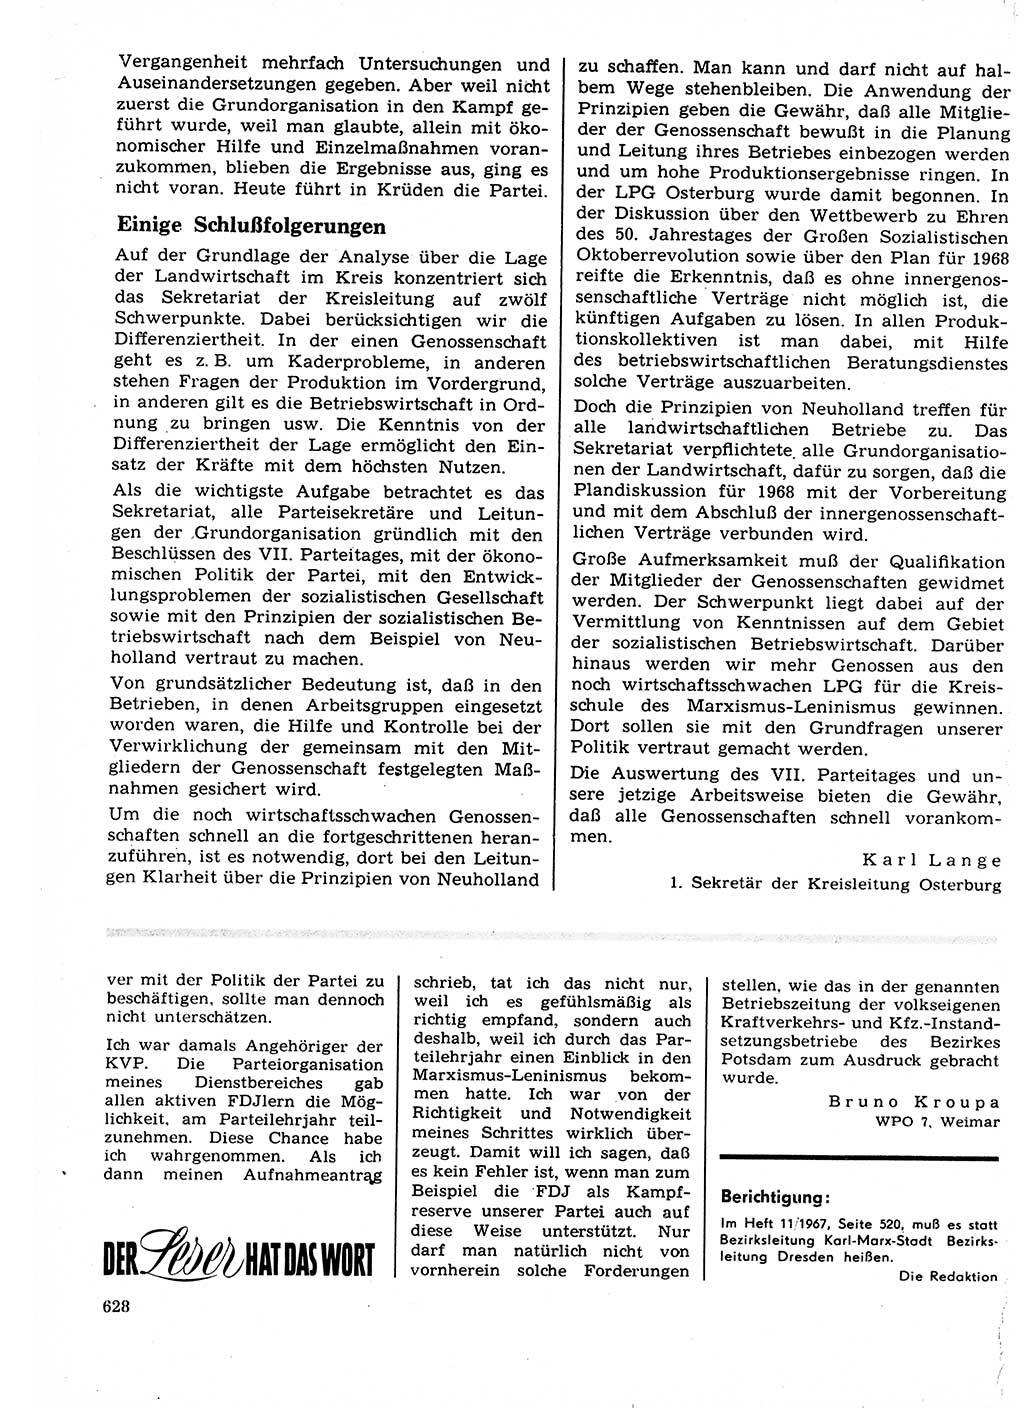 Neuer Weg (NW), Organ des Zentralkomitees (ZK) der SED (Sozialistische Einheitspartei Deutschlands) für Fragen des Parteilebens, 22. Jahrgang [Deutsche Demokratische Republik (DDR)] 1967, Seite 628 (NW ZK SED DDR 1967, S. 628)